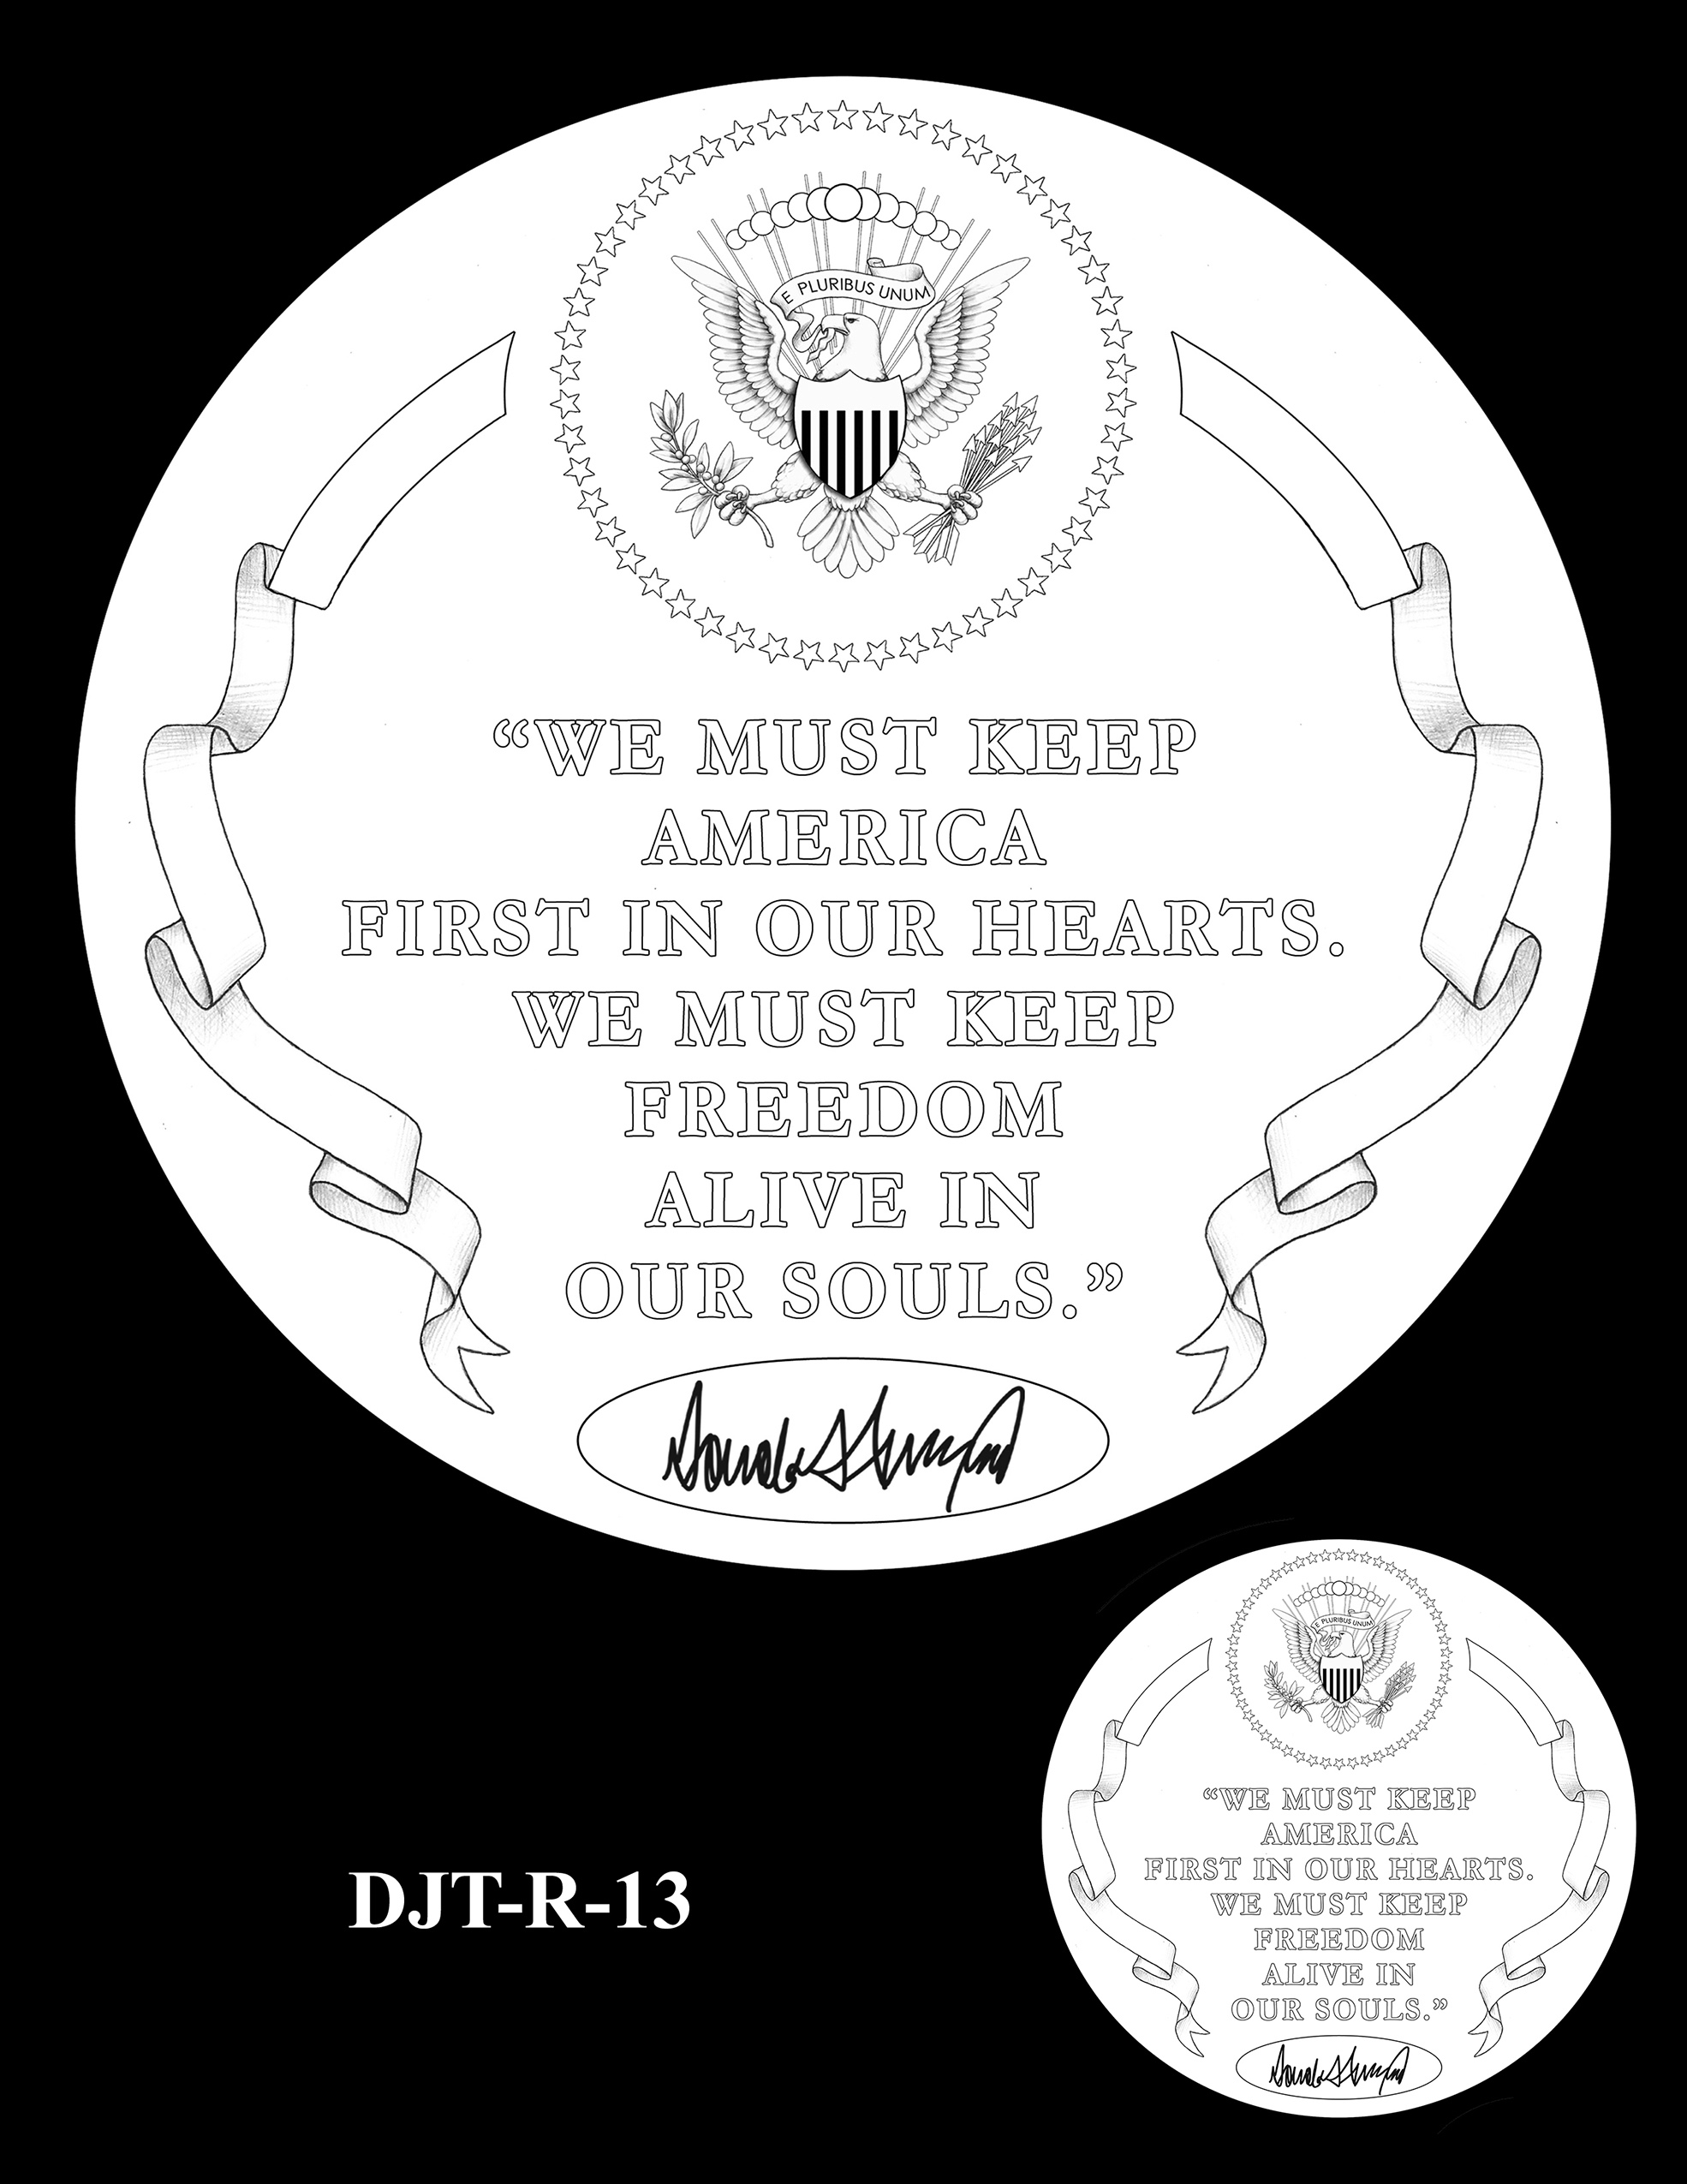 DJT-R-13 -- Donald J. Trump Presidential Medal